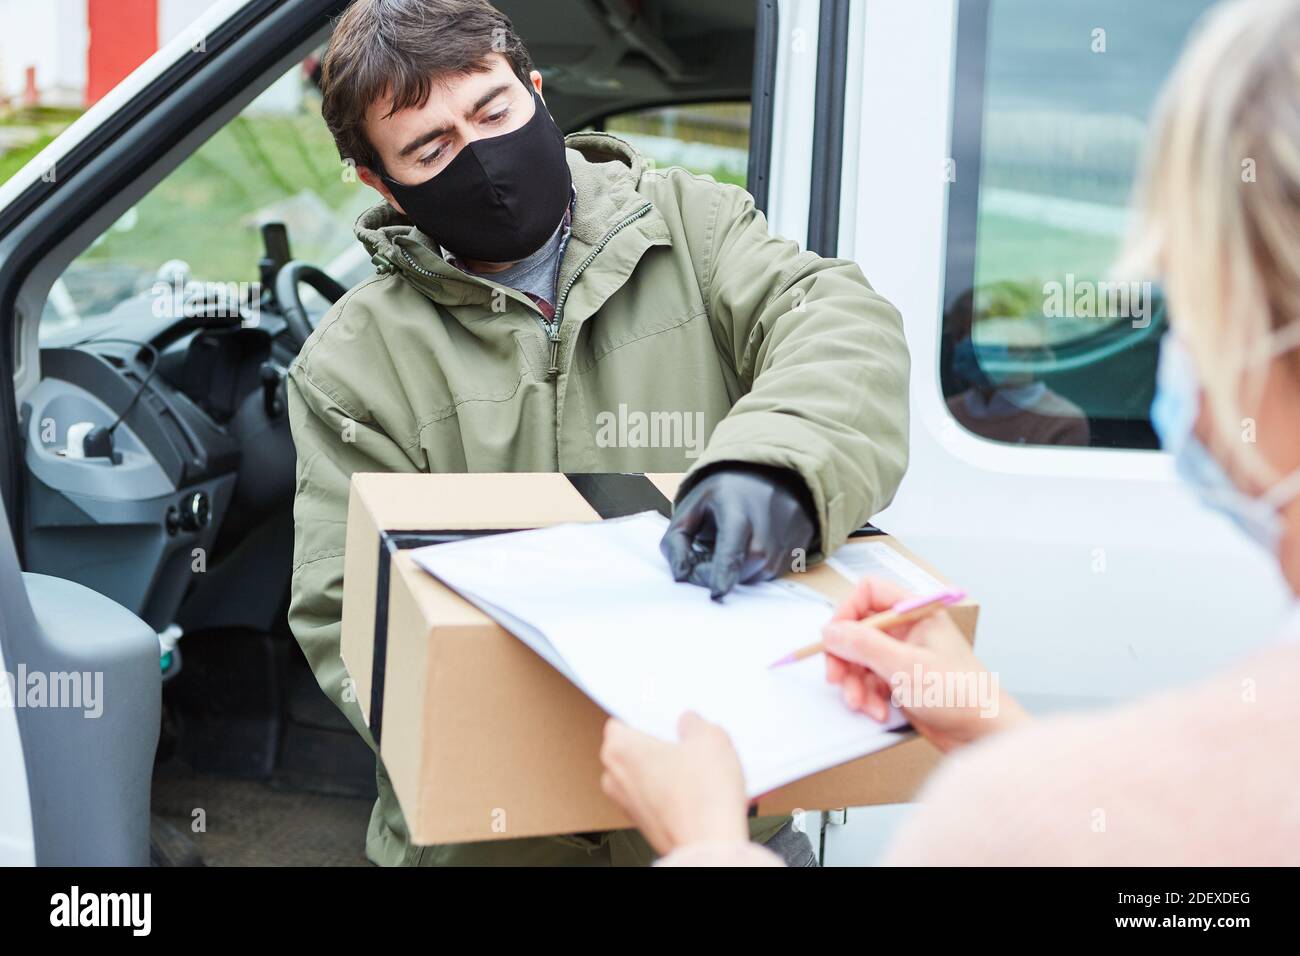 Il cliente firma una conferma di ricevimento del pacco dopo aver ricevuto la consegna con una maschera facciale dovuta a. Covid-19 Foto Stock